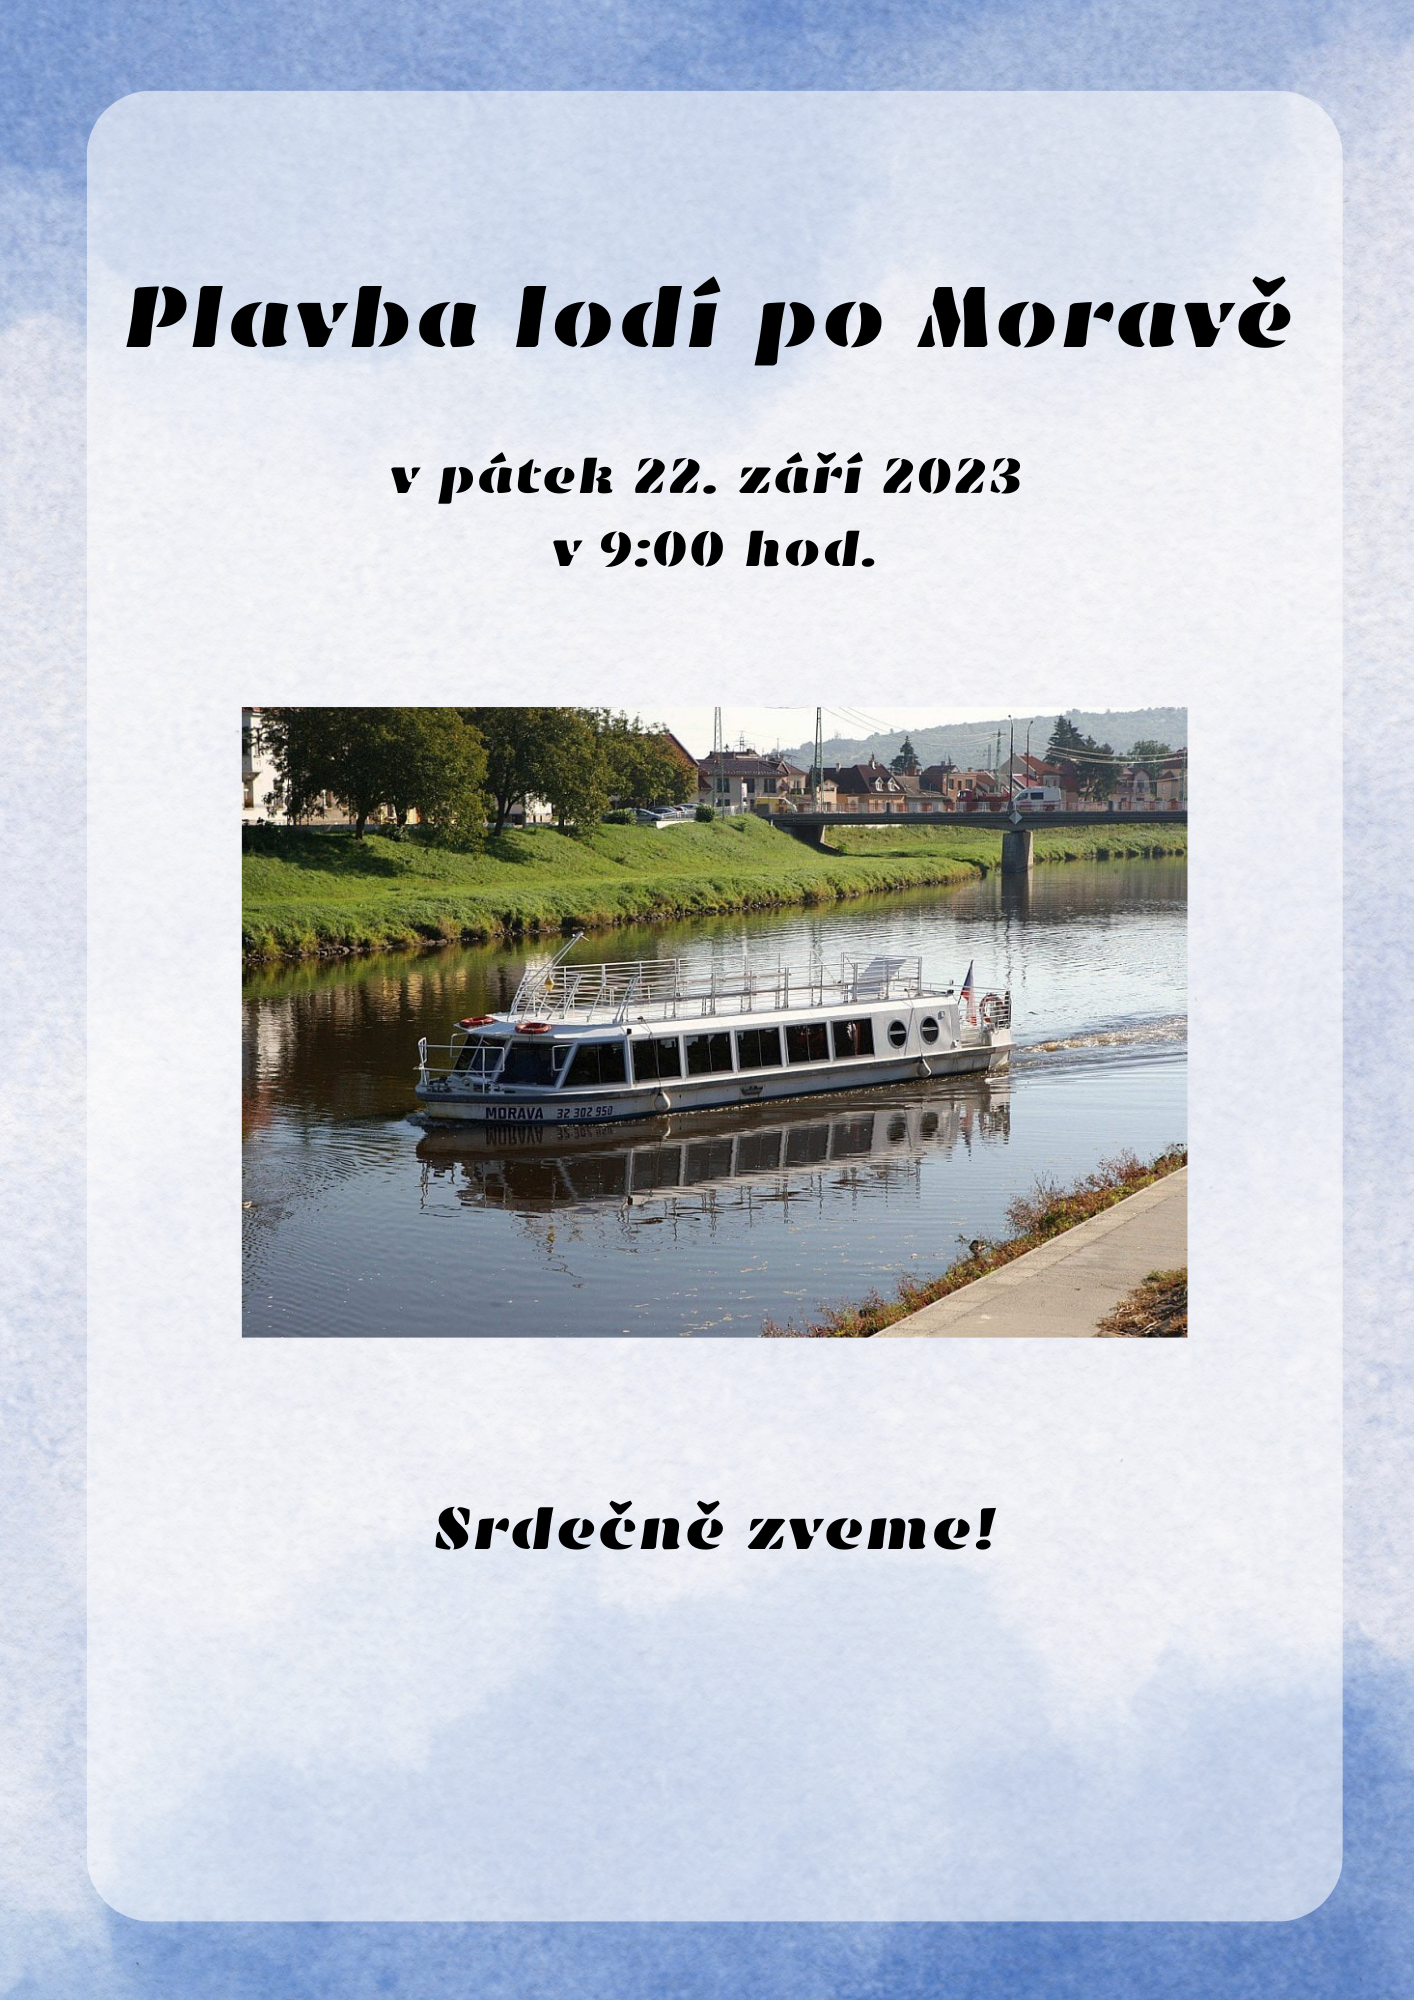 Plavba-lodi-po-Morave-22-zari-2023-1.png